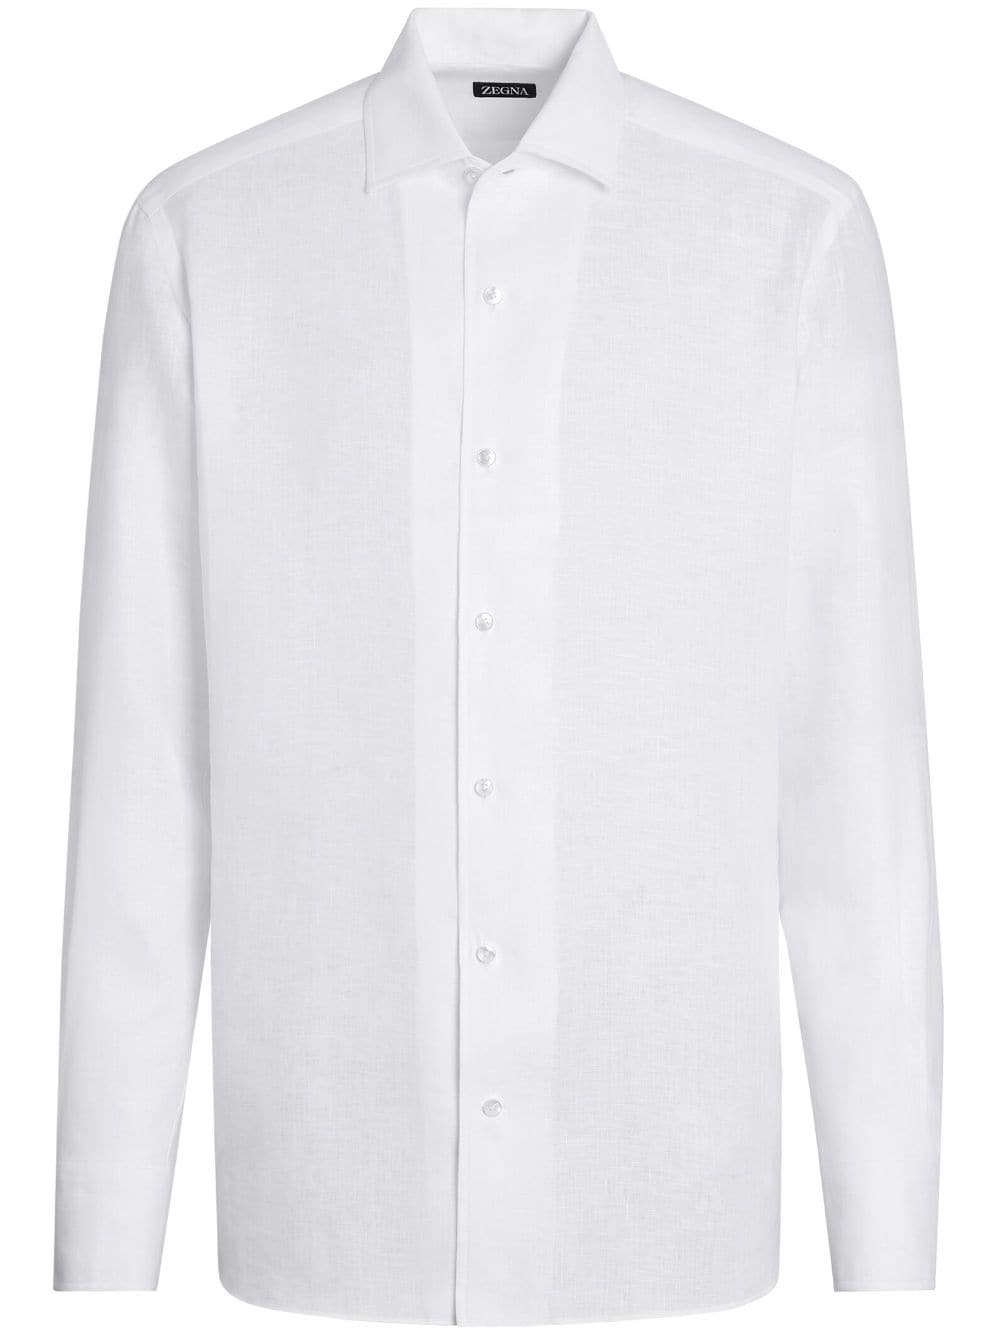 Zegna Pure Linen long-sleeve shirt - White von Zegna